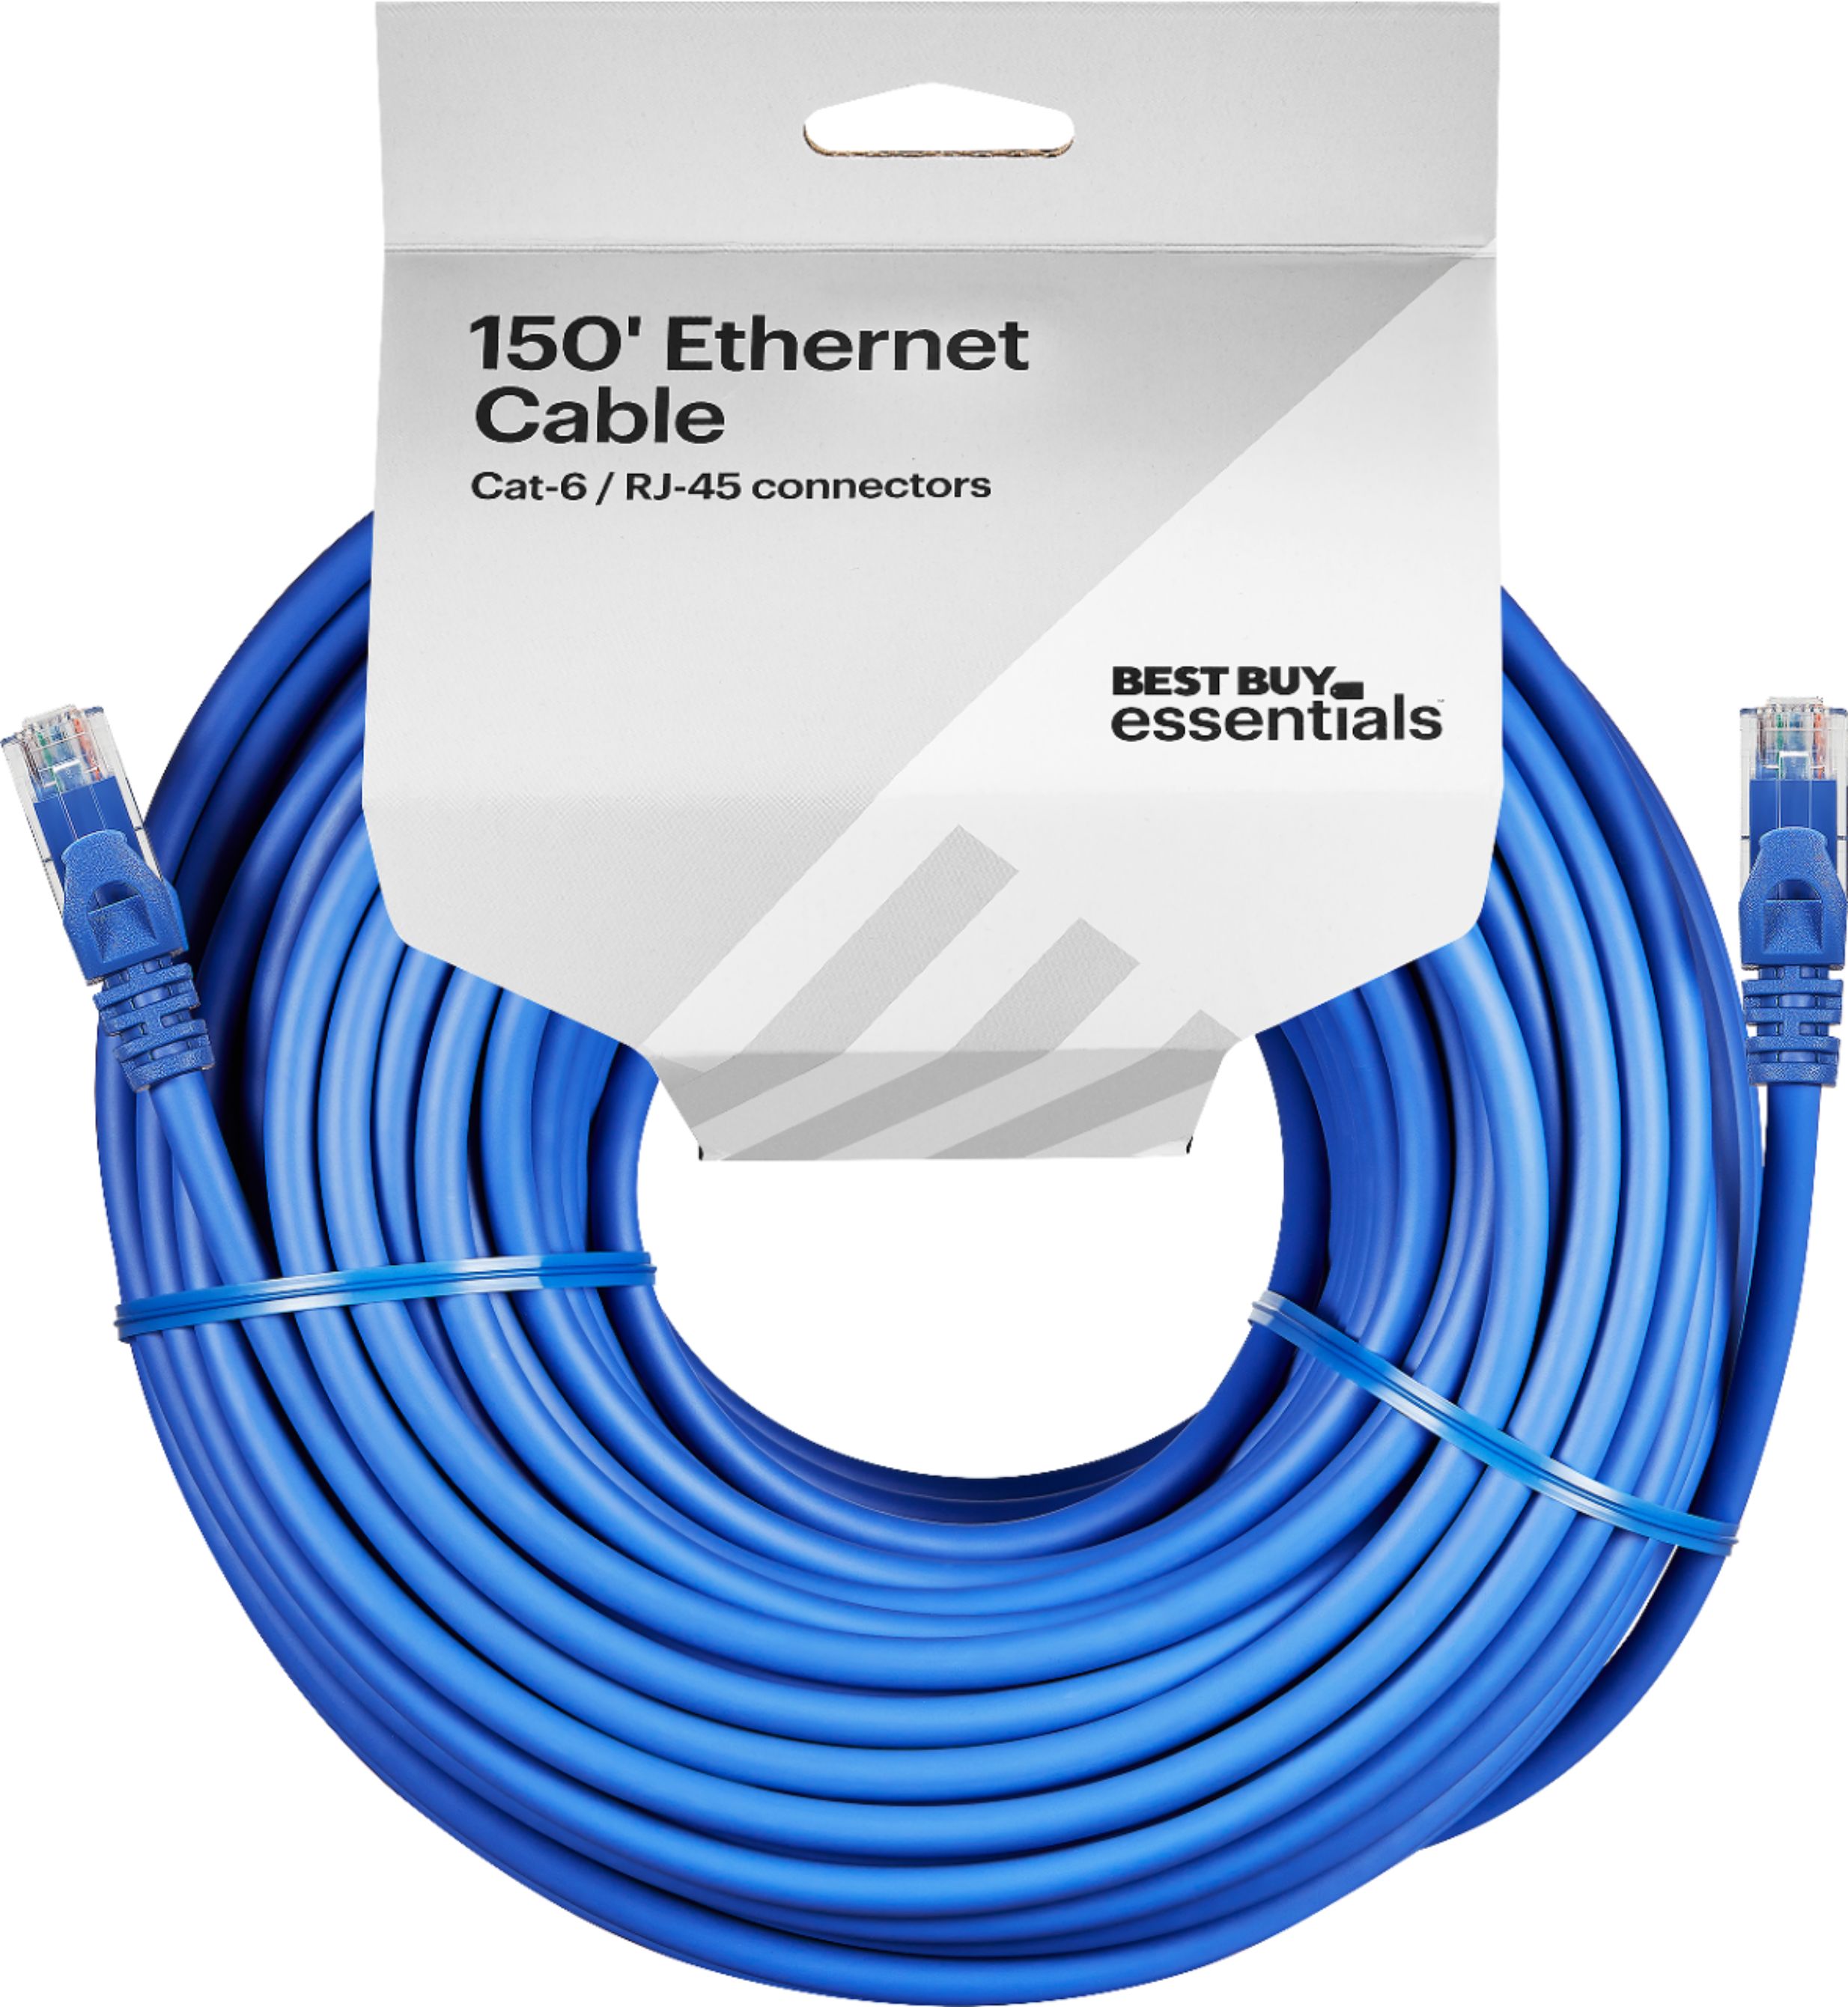 Best Buy essentials™ 150' Cat-6 Ethernet Cable Blue BE-PEC6ST150